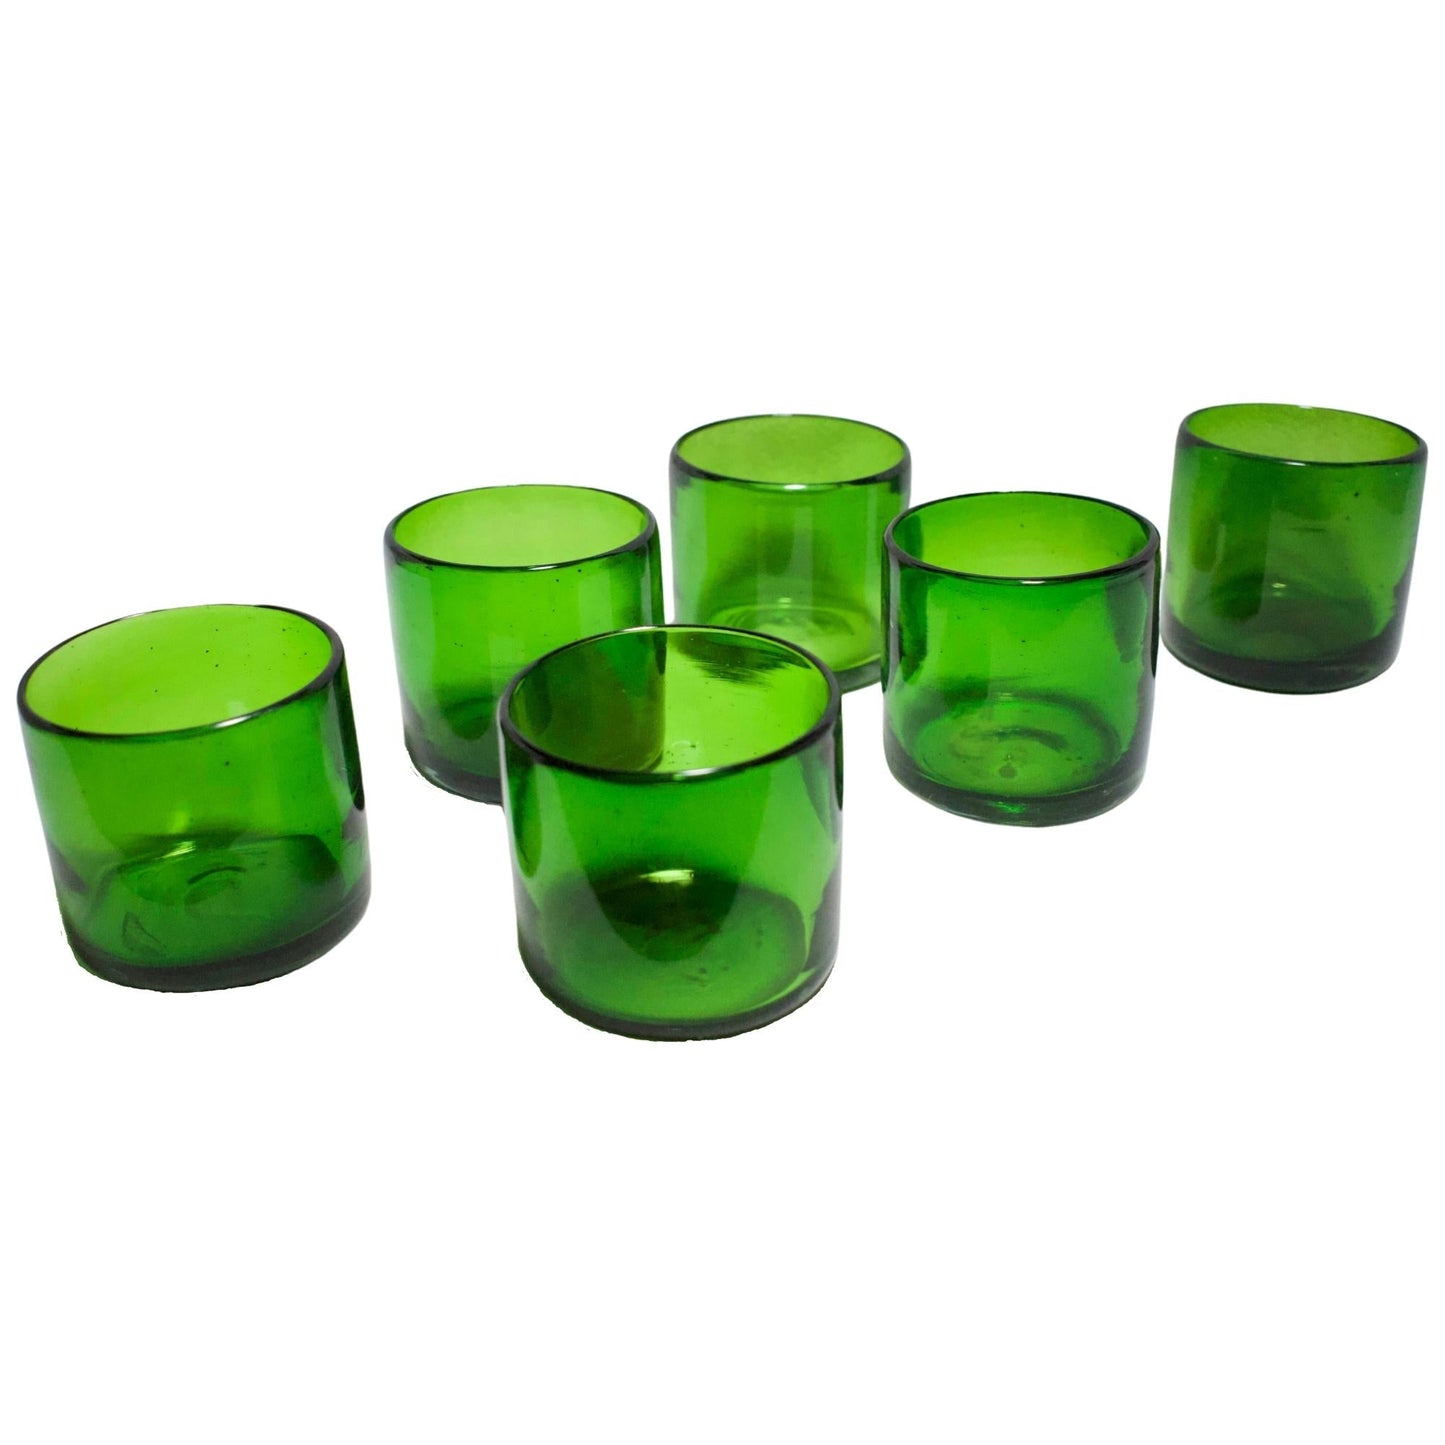 https://www.marey.com.mx/cdn/shop/products/vasos-vidrio-soplado-set-de-6-piezas-hechos-artesanalmente-en-mexico-verde-solido-old-fashioned-8-oz-mareyhomegoods-294481.jpg?v=1692962690&width=1445